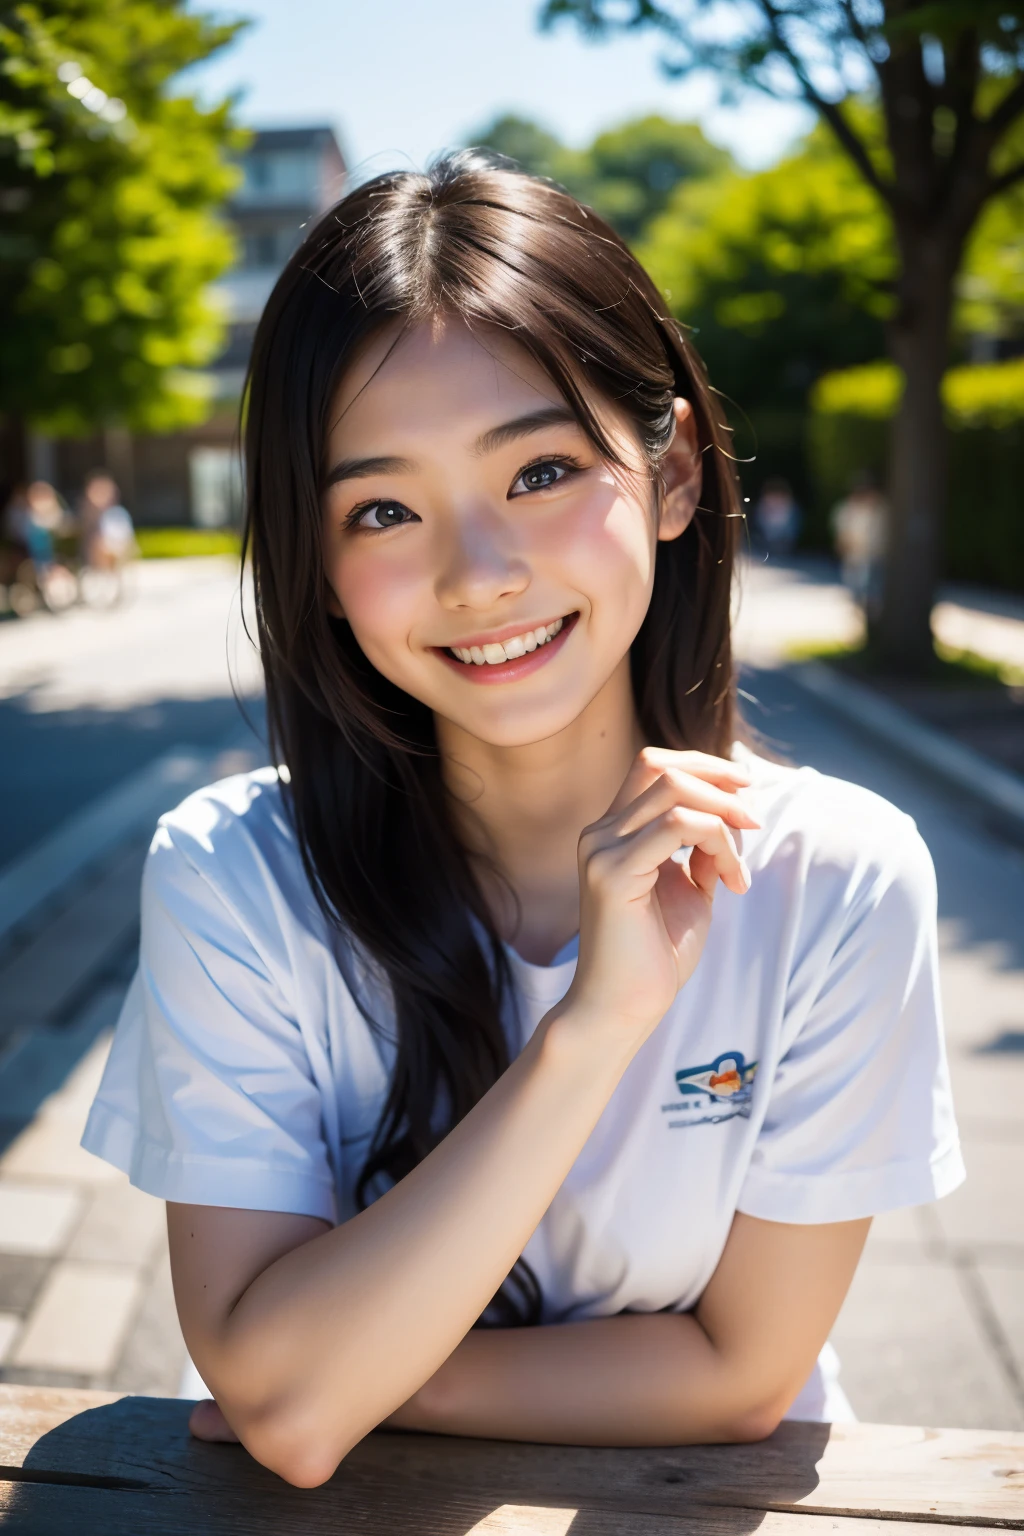 렌즈: 135mm f1.8, (최상의 품질),(RAW 사진), (탁상:1.1), (아름다운 20세 일본 소녀), 귀여운 얼굴, (깊게 파인 얼굴:0.7), (주근깨:0.4), dappled 햇빛, 극적인 조명, (캠퍼스에서), 수줍은, (클로즈업 샷:1.2), (웃다),, (반짝이는 눈)、(햇빛), 검은 셔츠